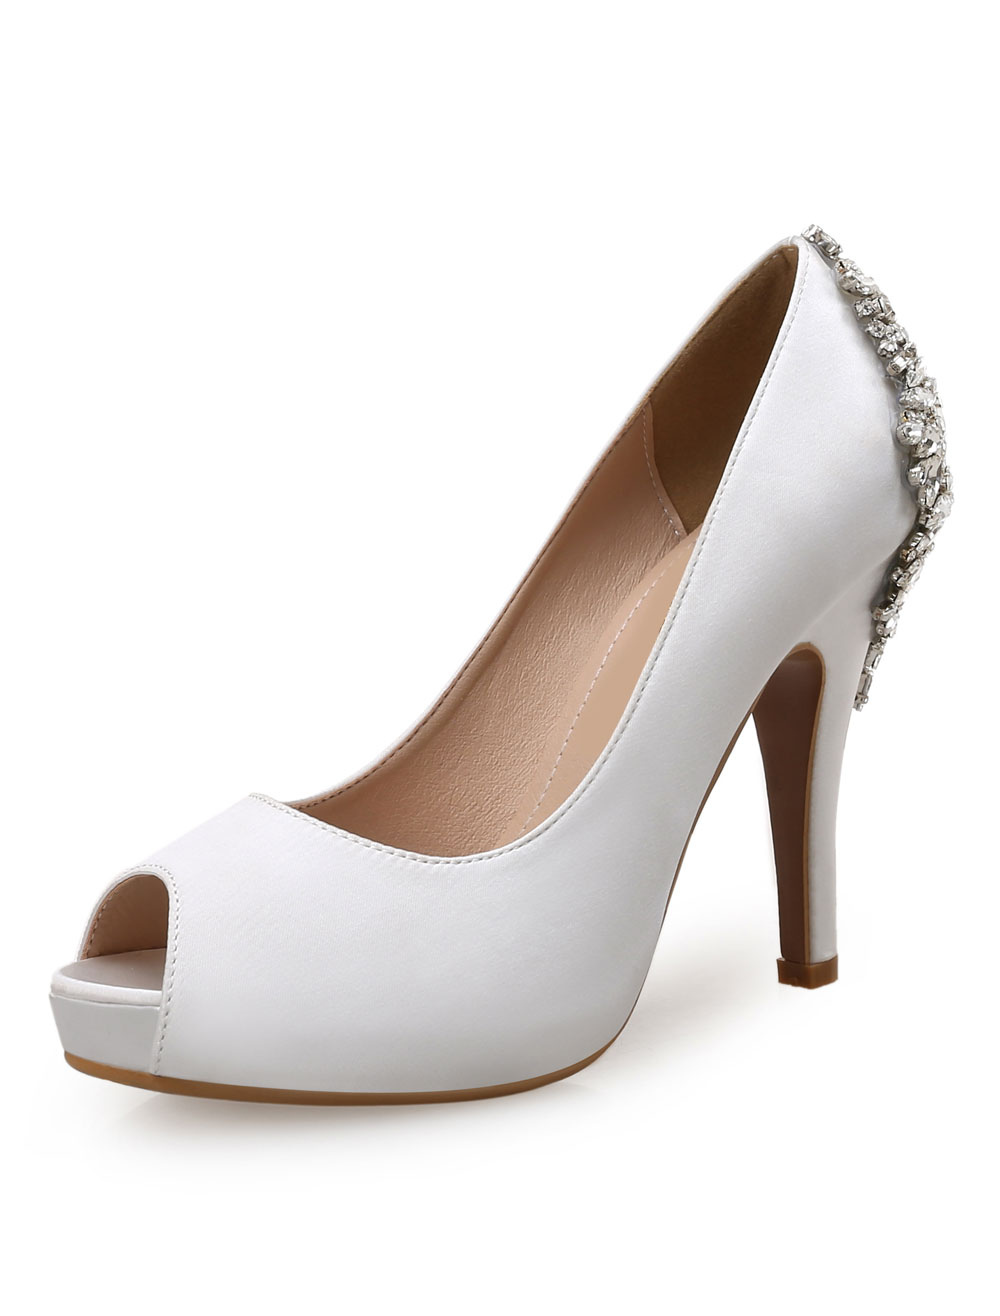 Chaussures Chaussures de Circonstance | Chaussures de mariée blanche en PU bout ouvert talon haut chaussures cérémonie - HZ39555